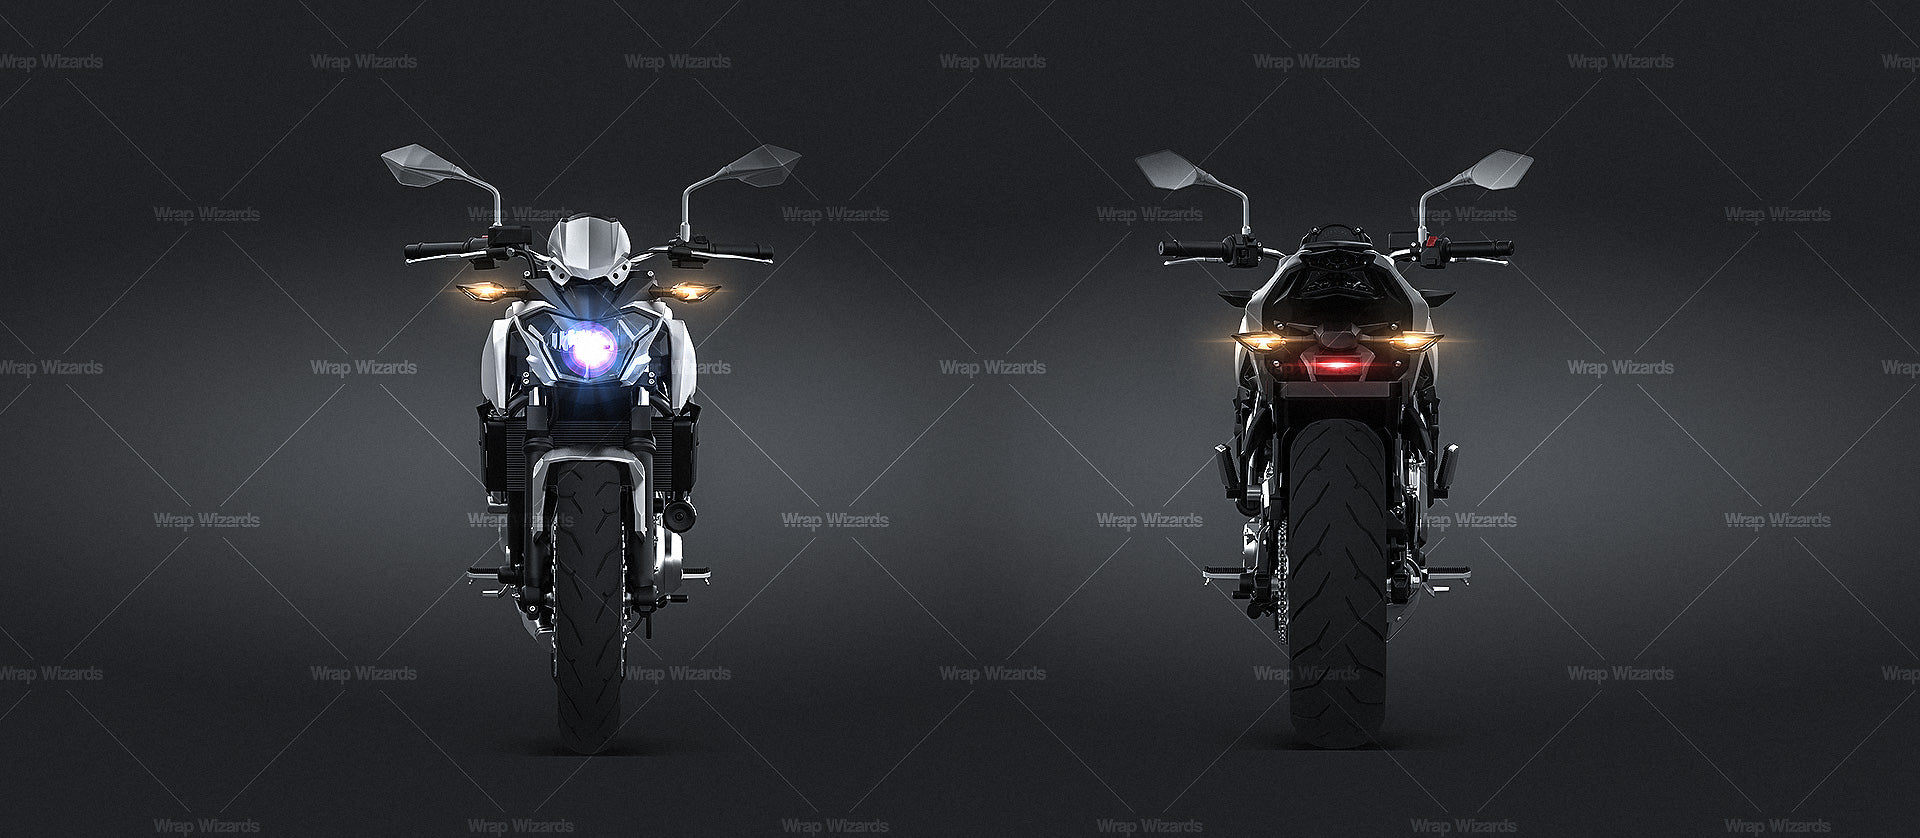 Kawasaki Z650 2017 - Motorcycle Mockup